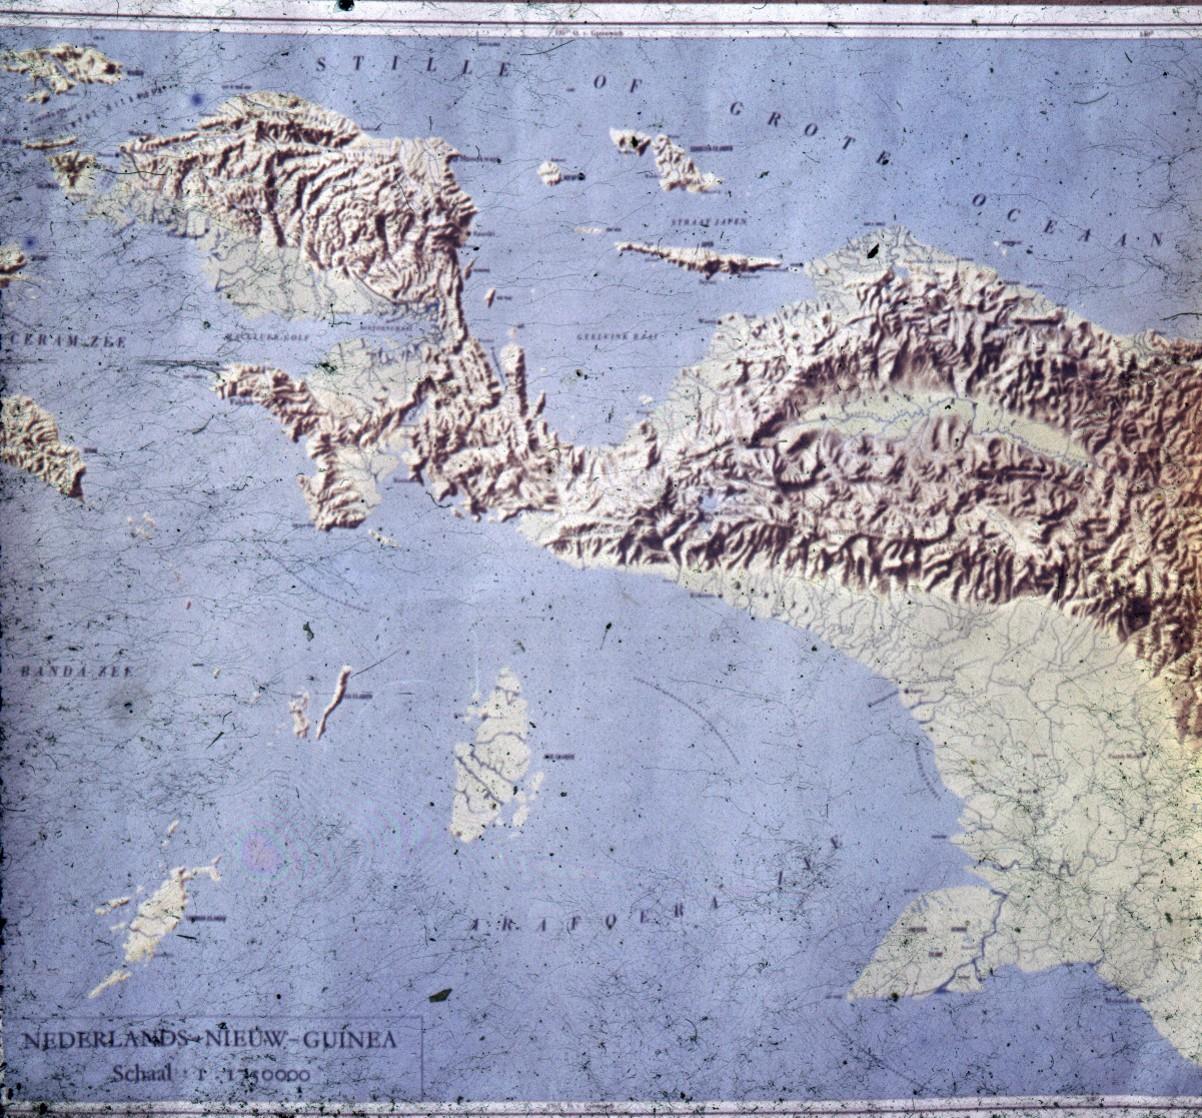 BD/66/173 - 
Topografische kaart van Nieuw-Guinea
